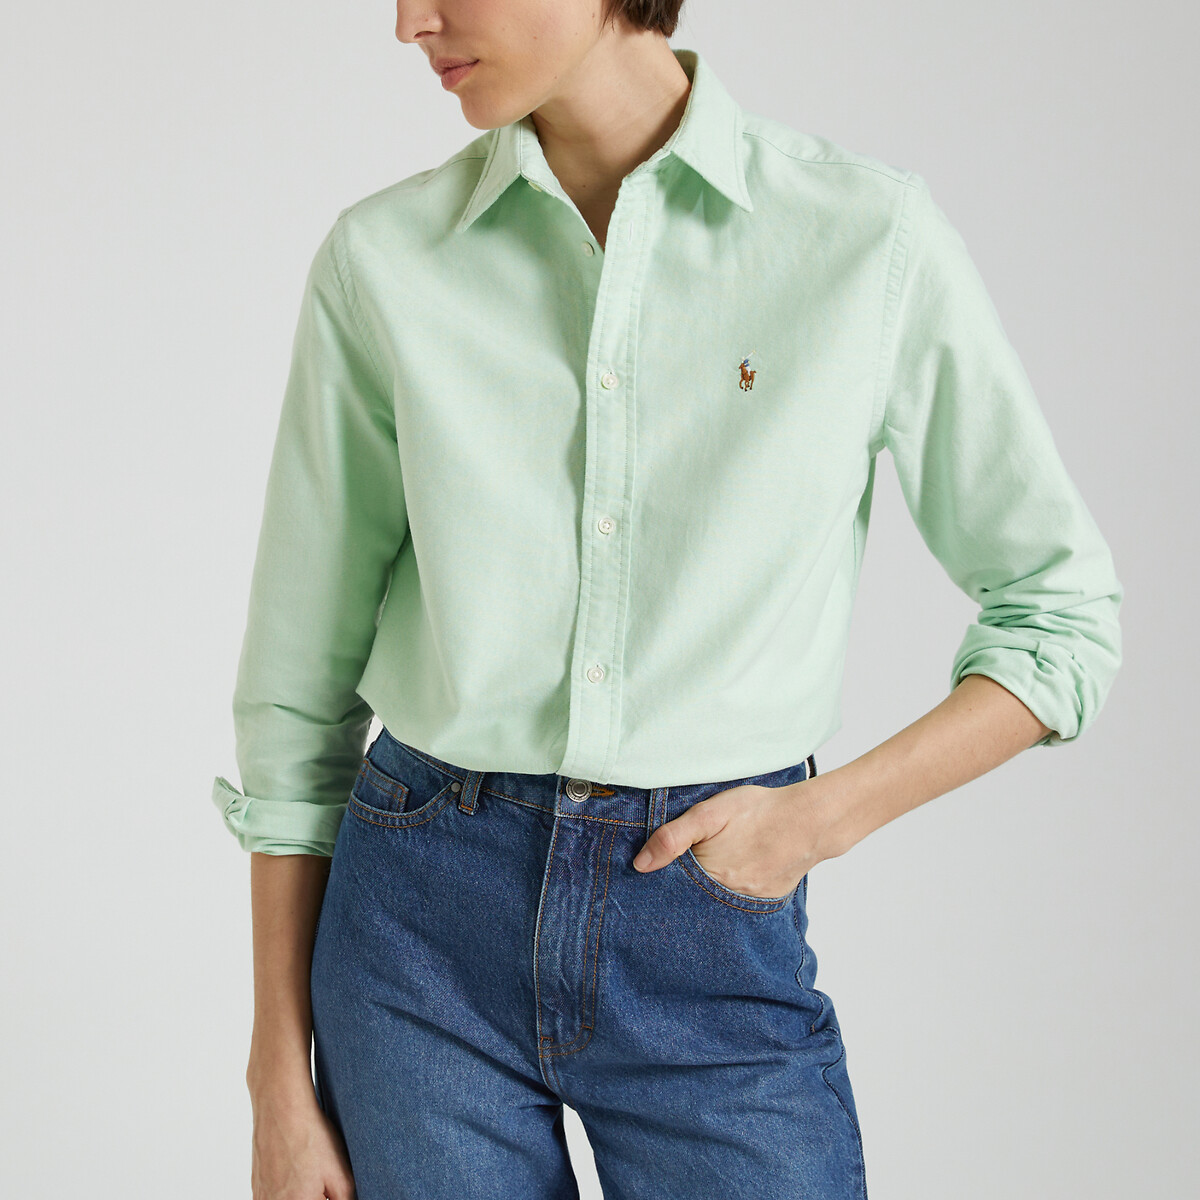 Рубашка с длинными рукавами L зеленый рубашка прямого покроя с длинными рукавами xs белый